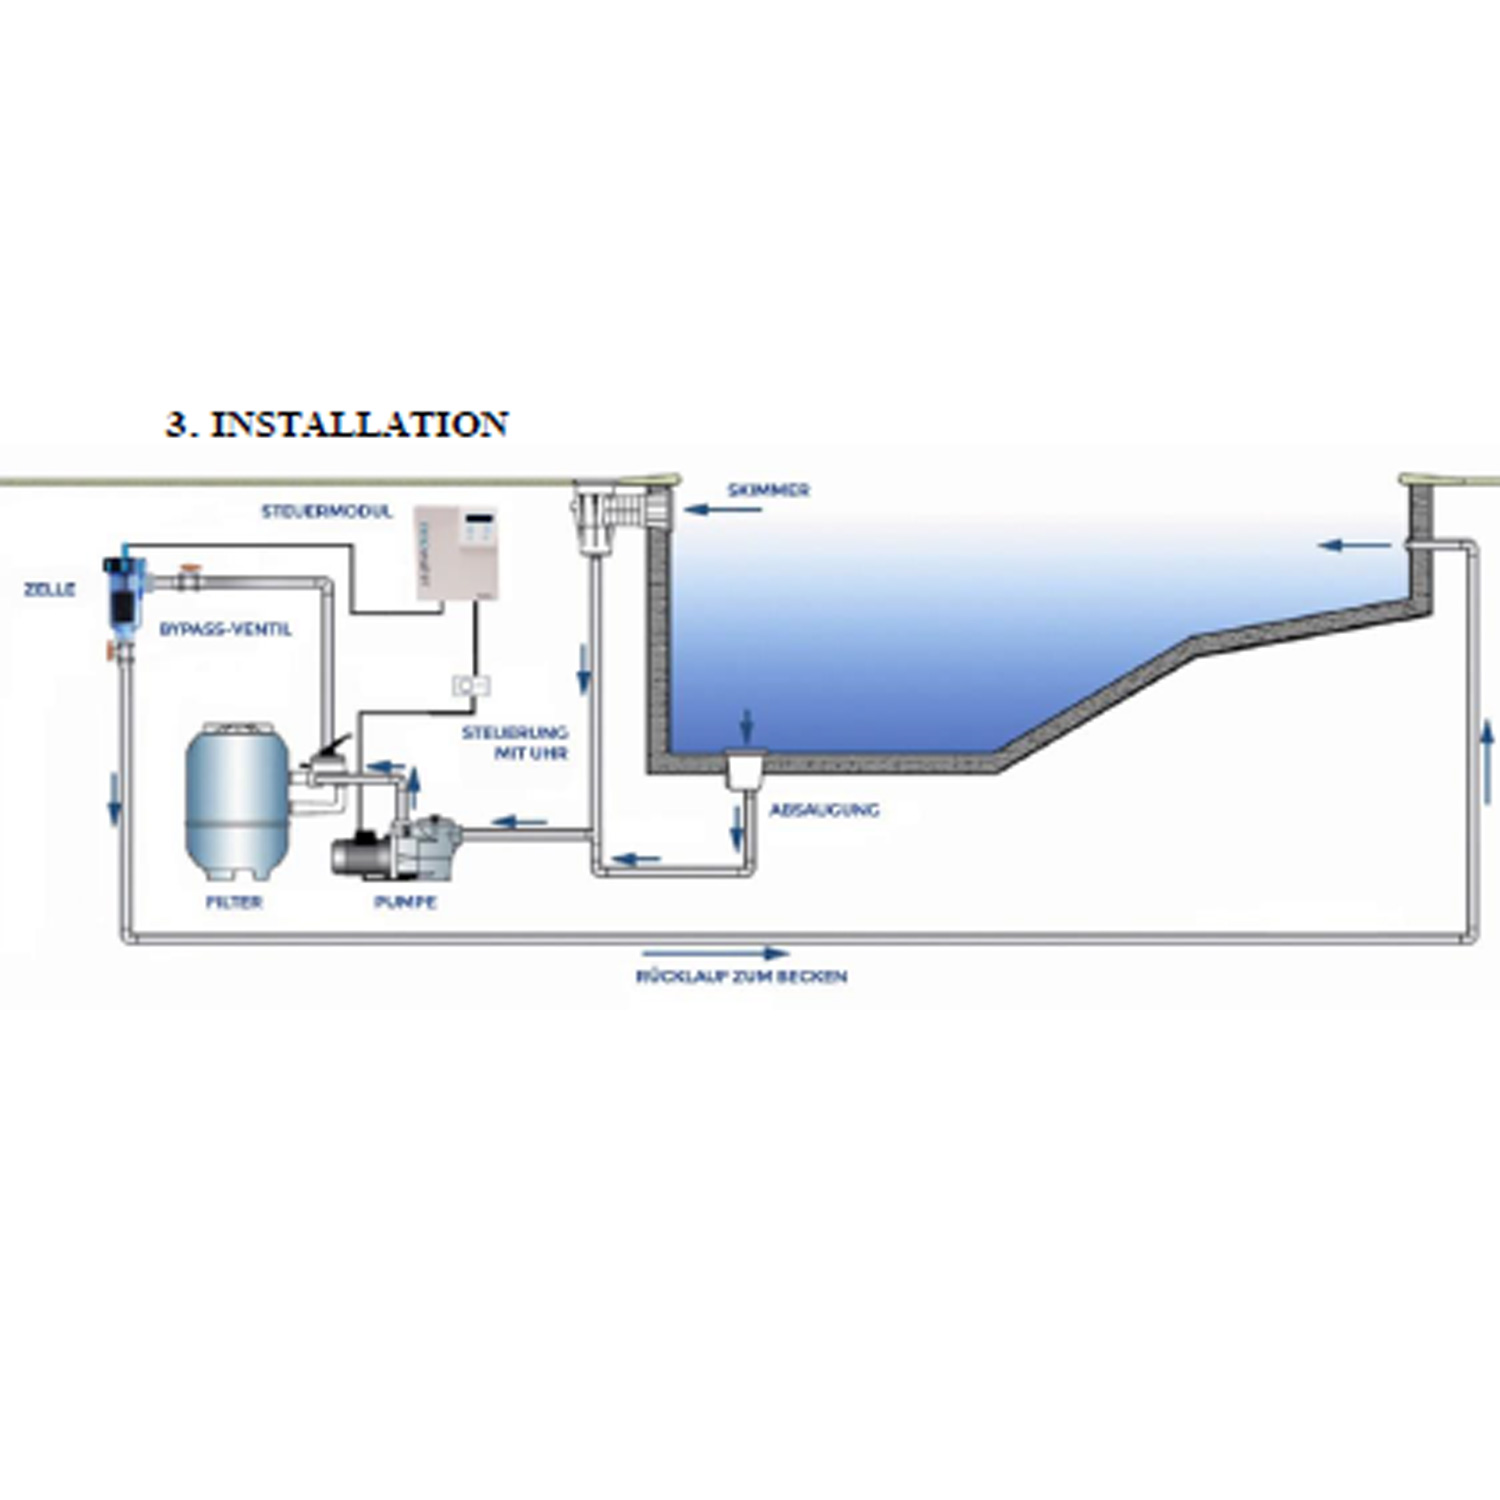 Salzelektrolyse SMC10 für Becken bis 30 m³